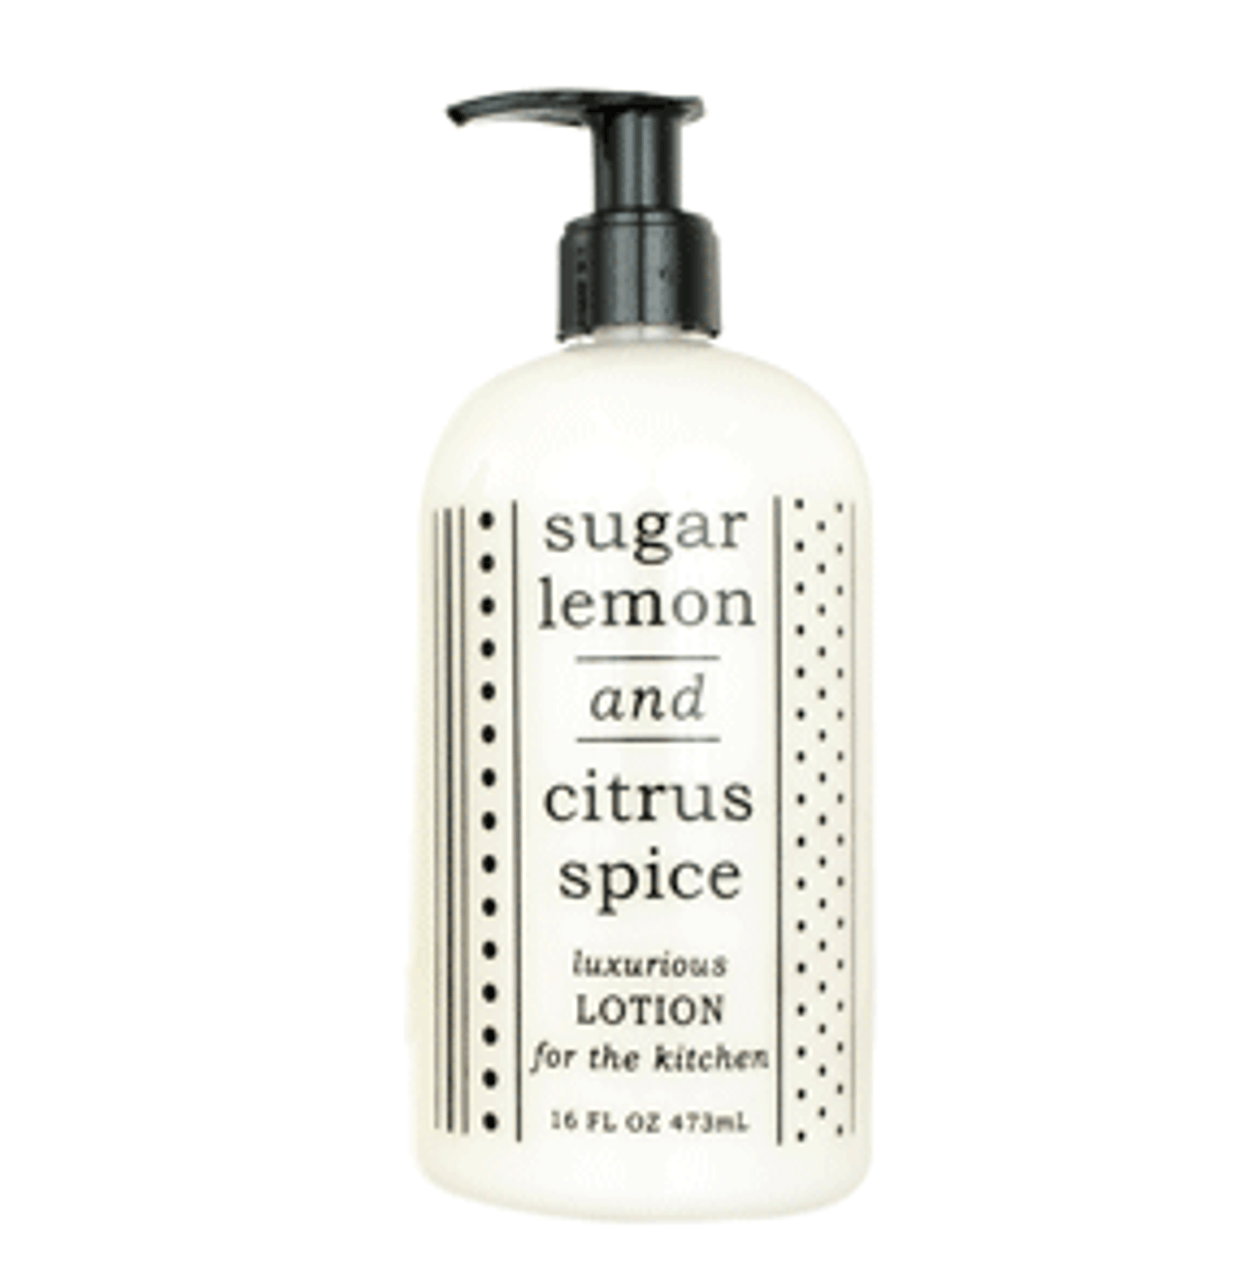 Kitchen Lotion | Sugar Lemon & Citrus Spice